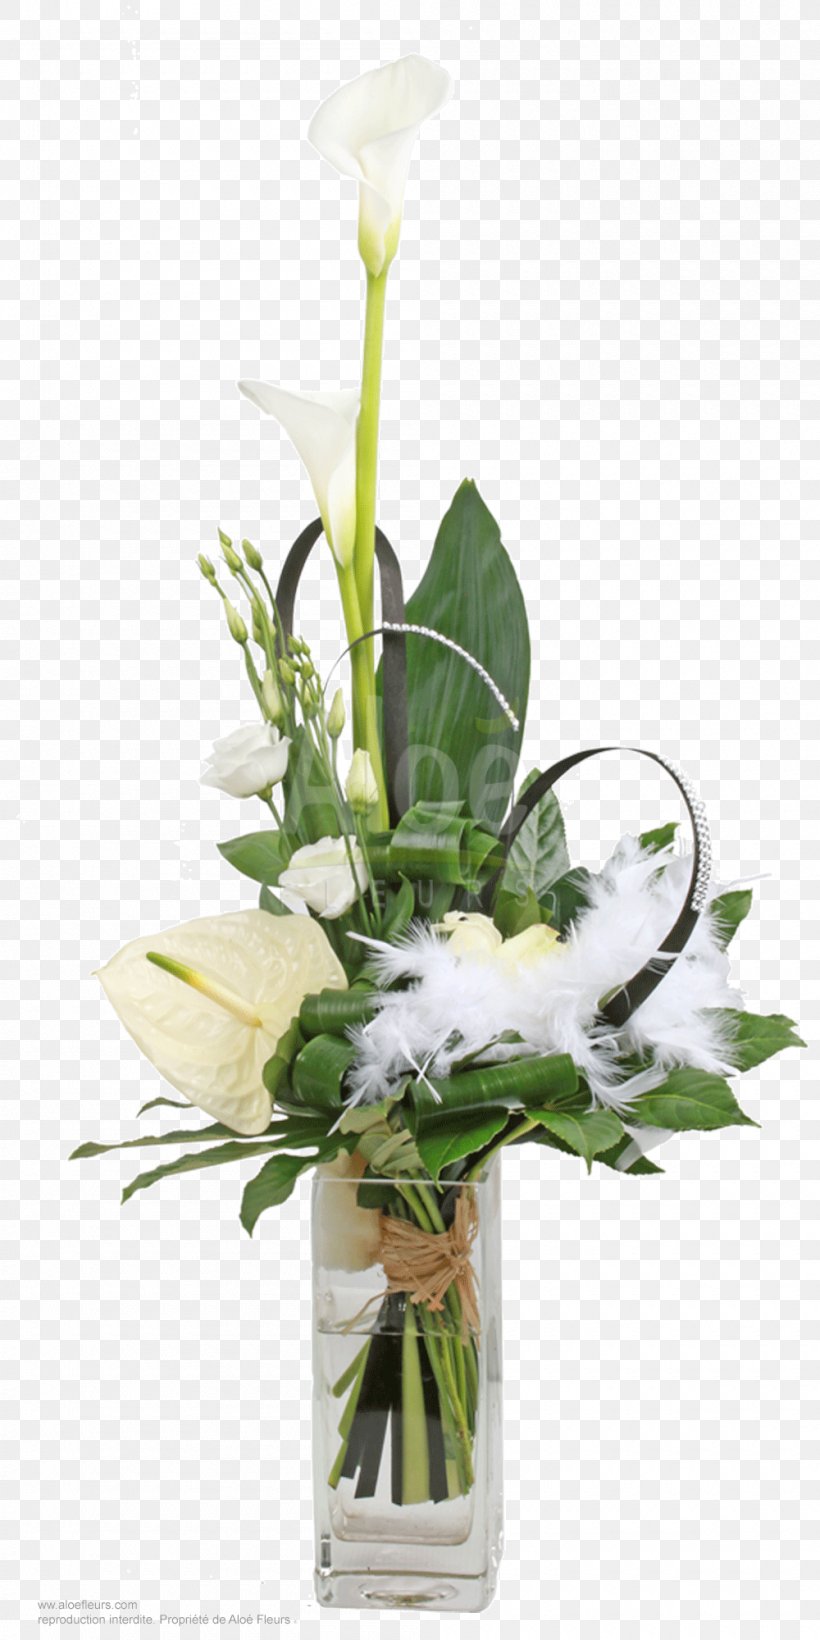 Floral Design Cut Flowers Vase Flower Bouquet, PNG, 1000x2000px, Floral Design, Artificial Flower, Centrepiece, Cut Flowers, Flora Download Free